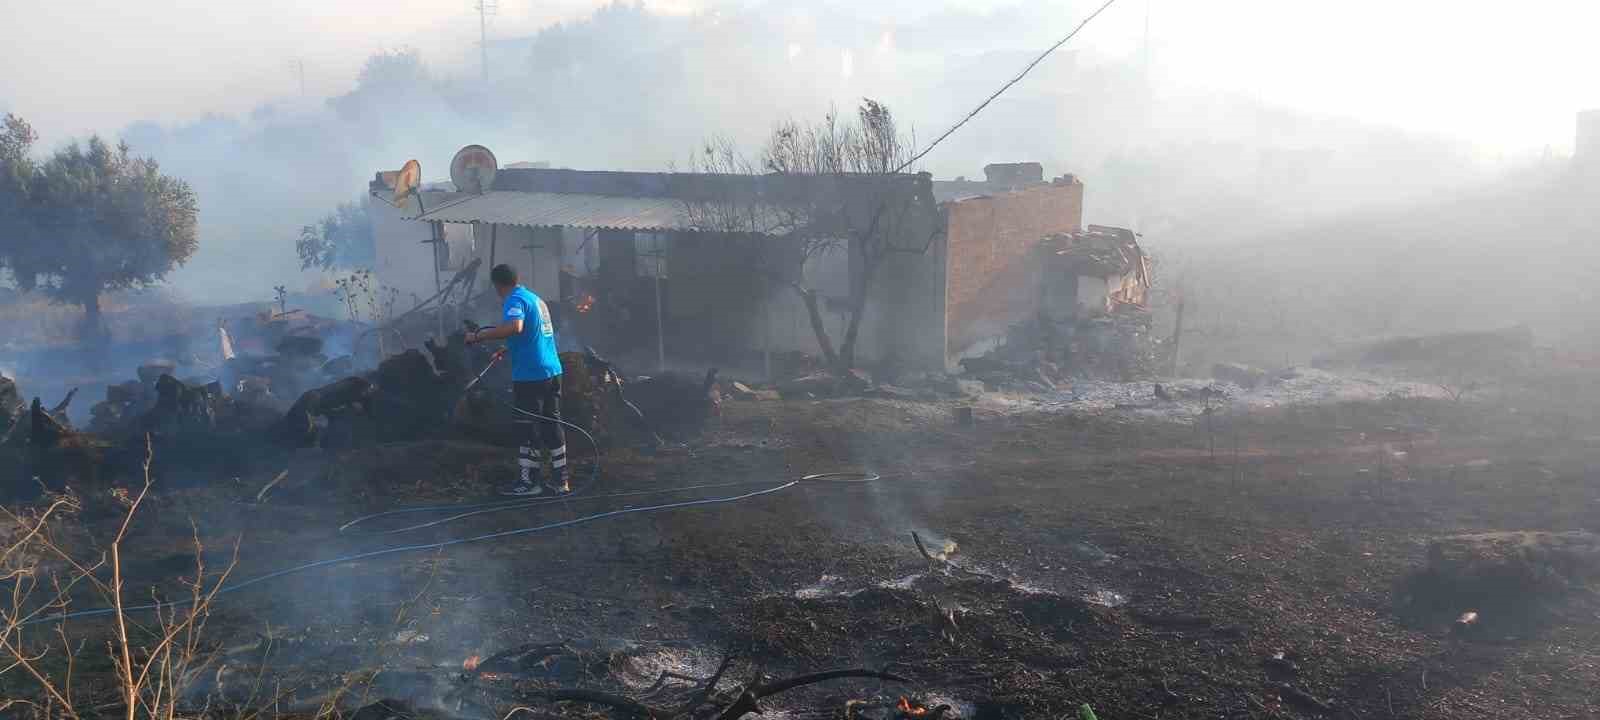 Manisa’daki yangına müdahale sürüyor: 300 hektar alan ile evler zarar gördü